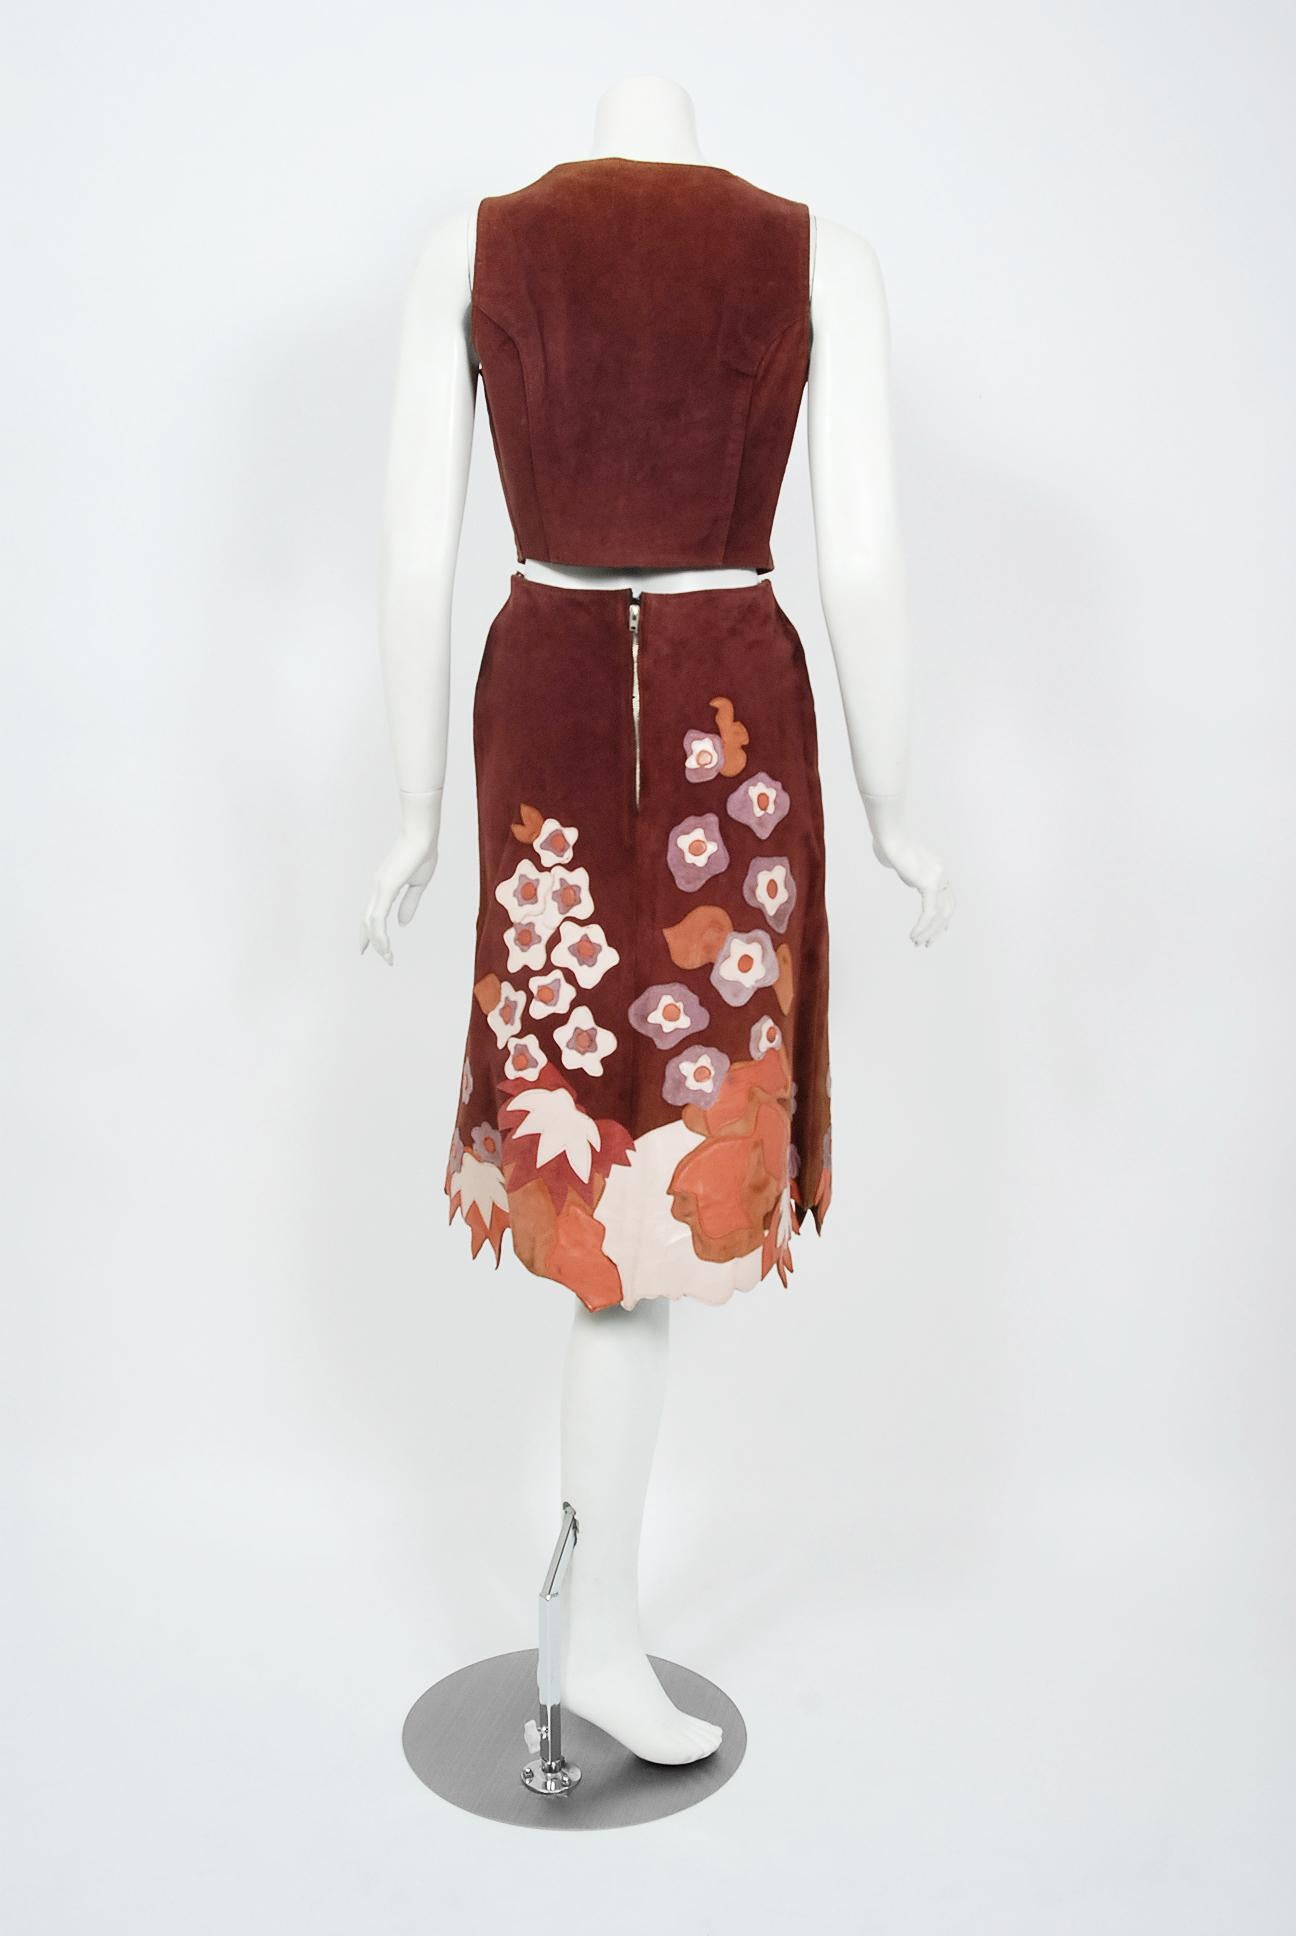 Women's Vintage 1970's Eavis & Brown Patchwork Leather Applique Bohemian Skirt w/ Vest